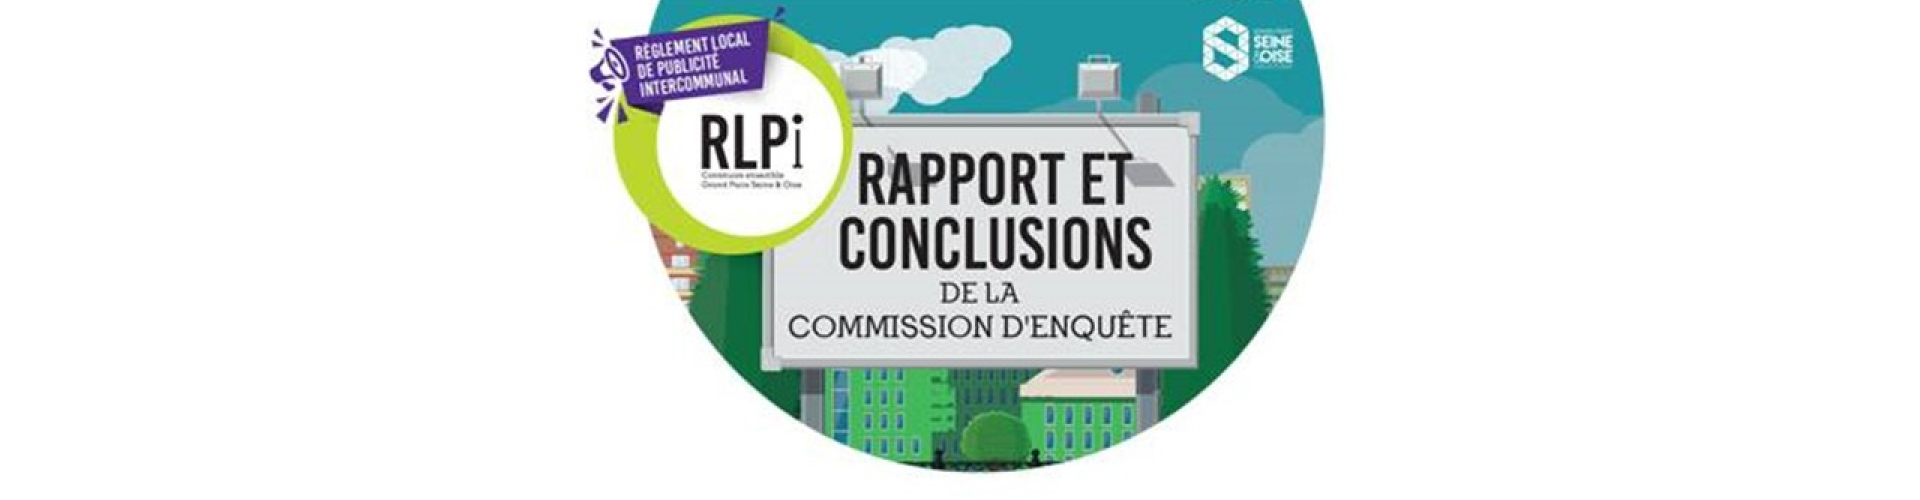 RLPi GPS&O - Rapport et conclusions de la commission d'enquête